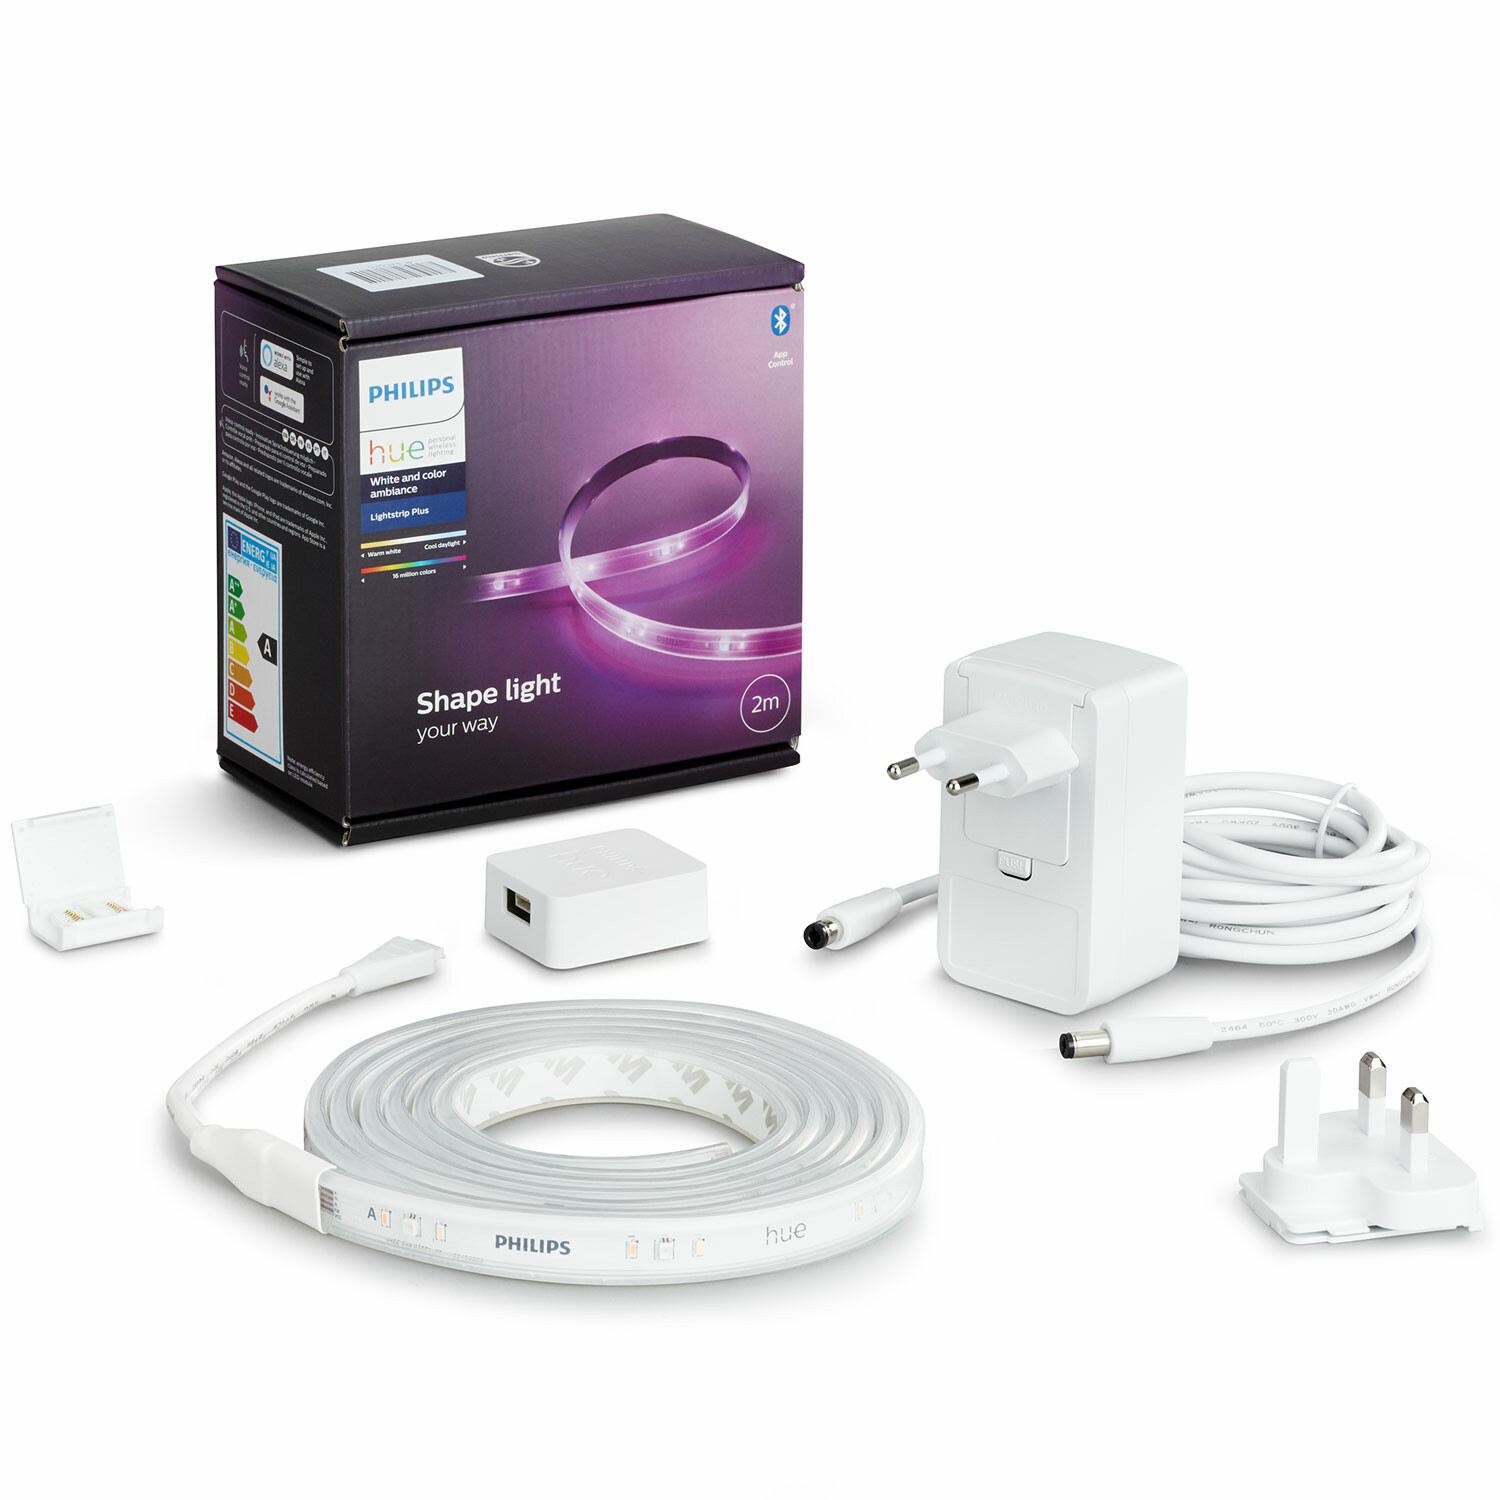 Philips Hue LightStrip Plus V4 2m base kit with plug